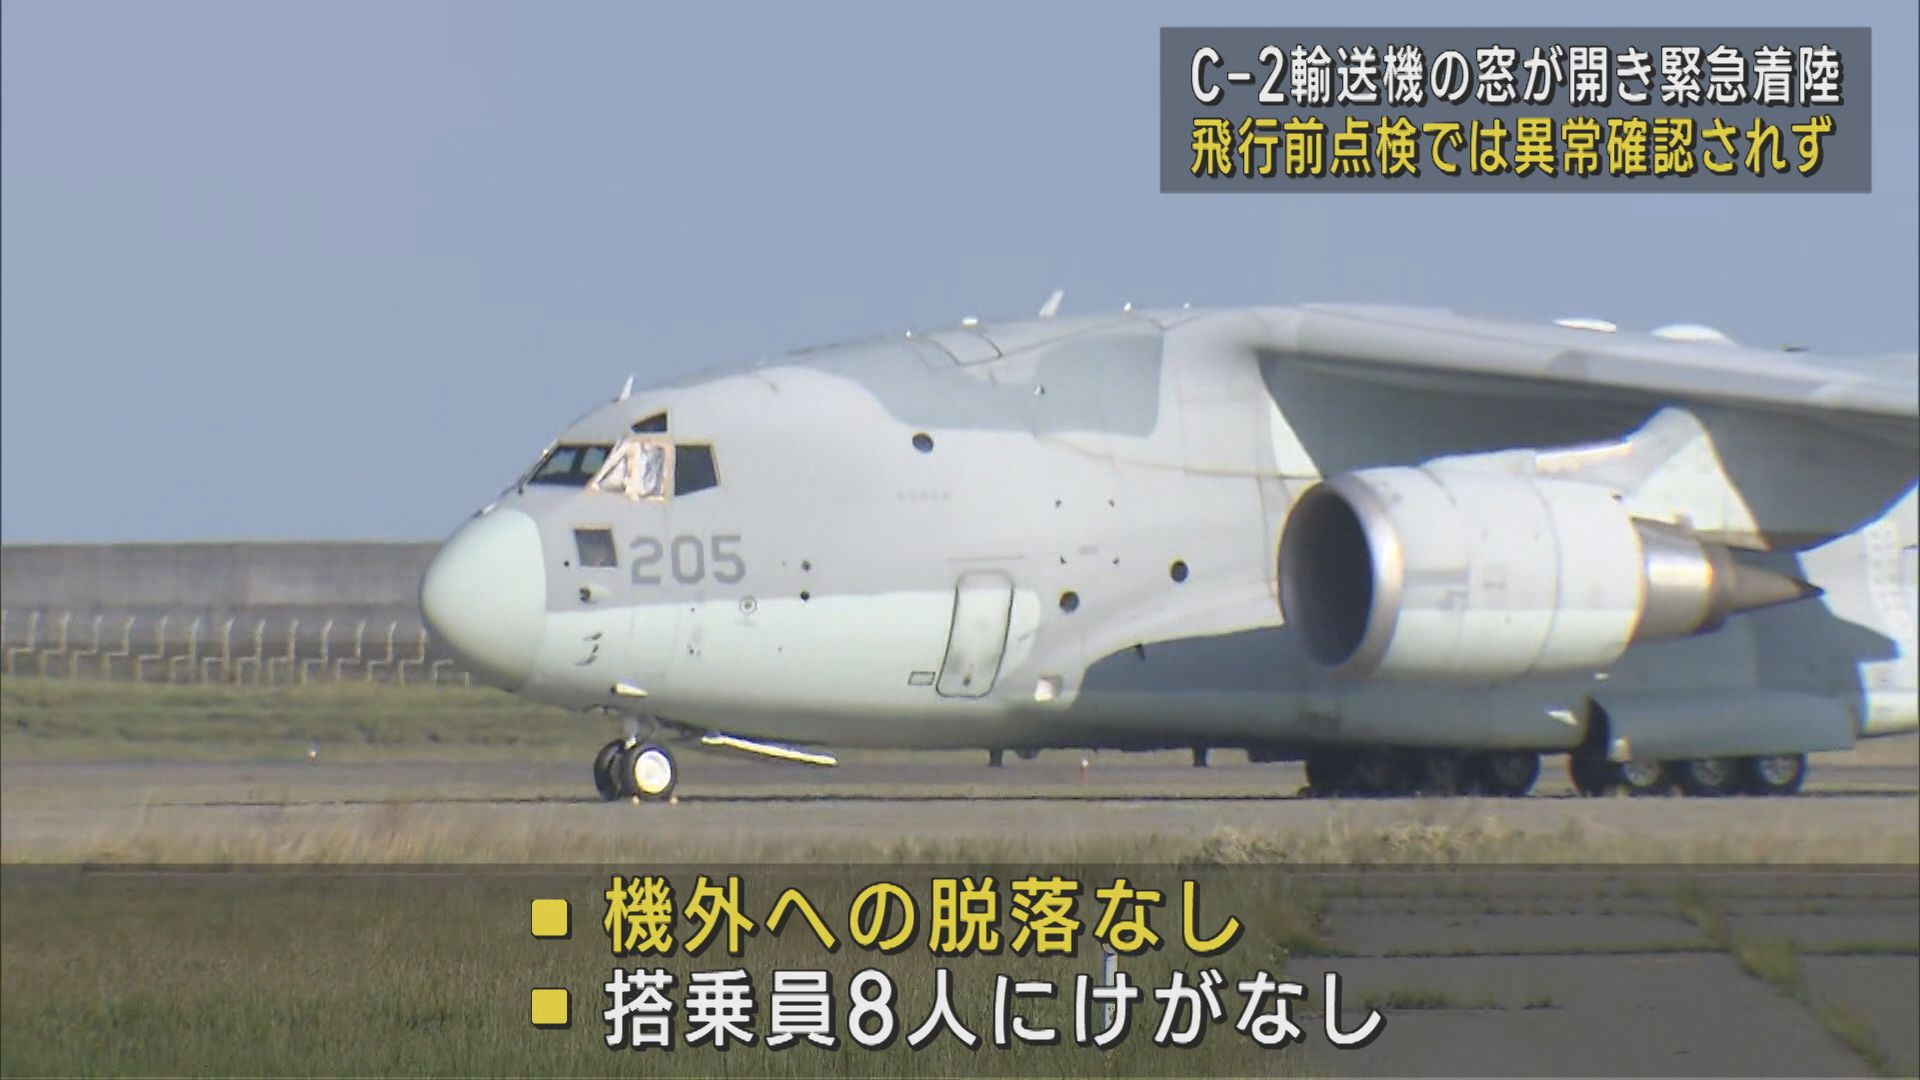 【続報】C-2輸送機の窓が開き緊急着陸 飛行前点検では異常確認されず【新潟】